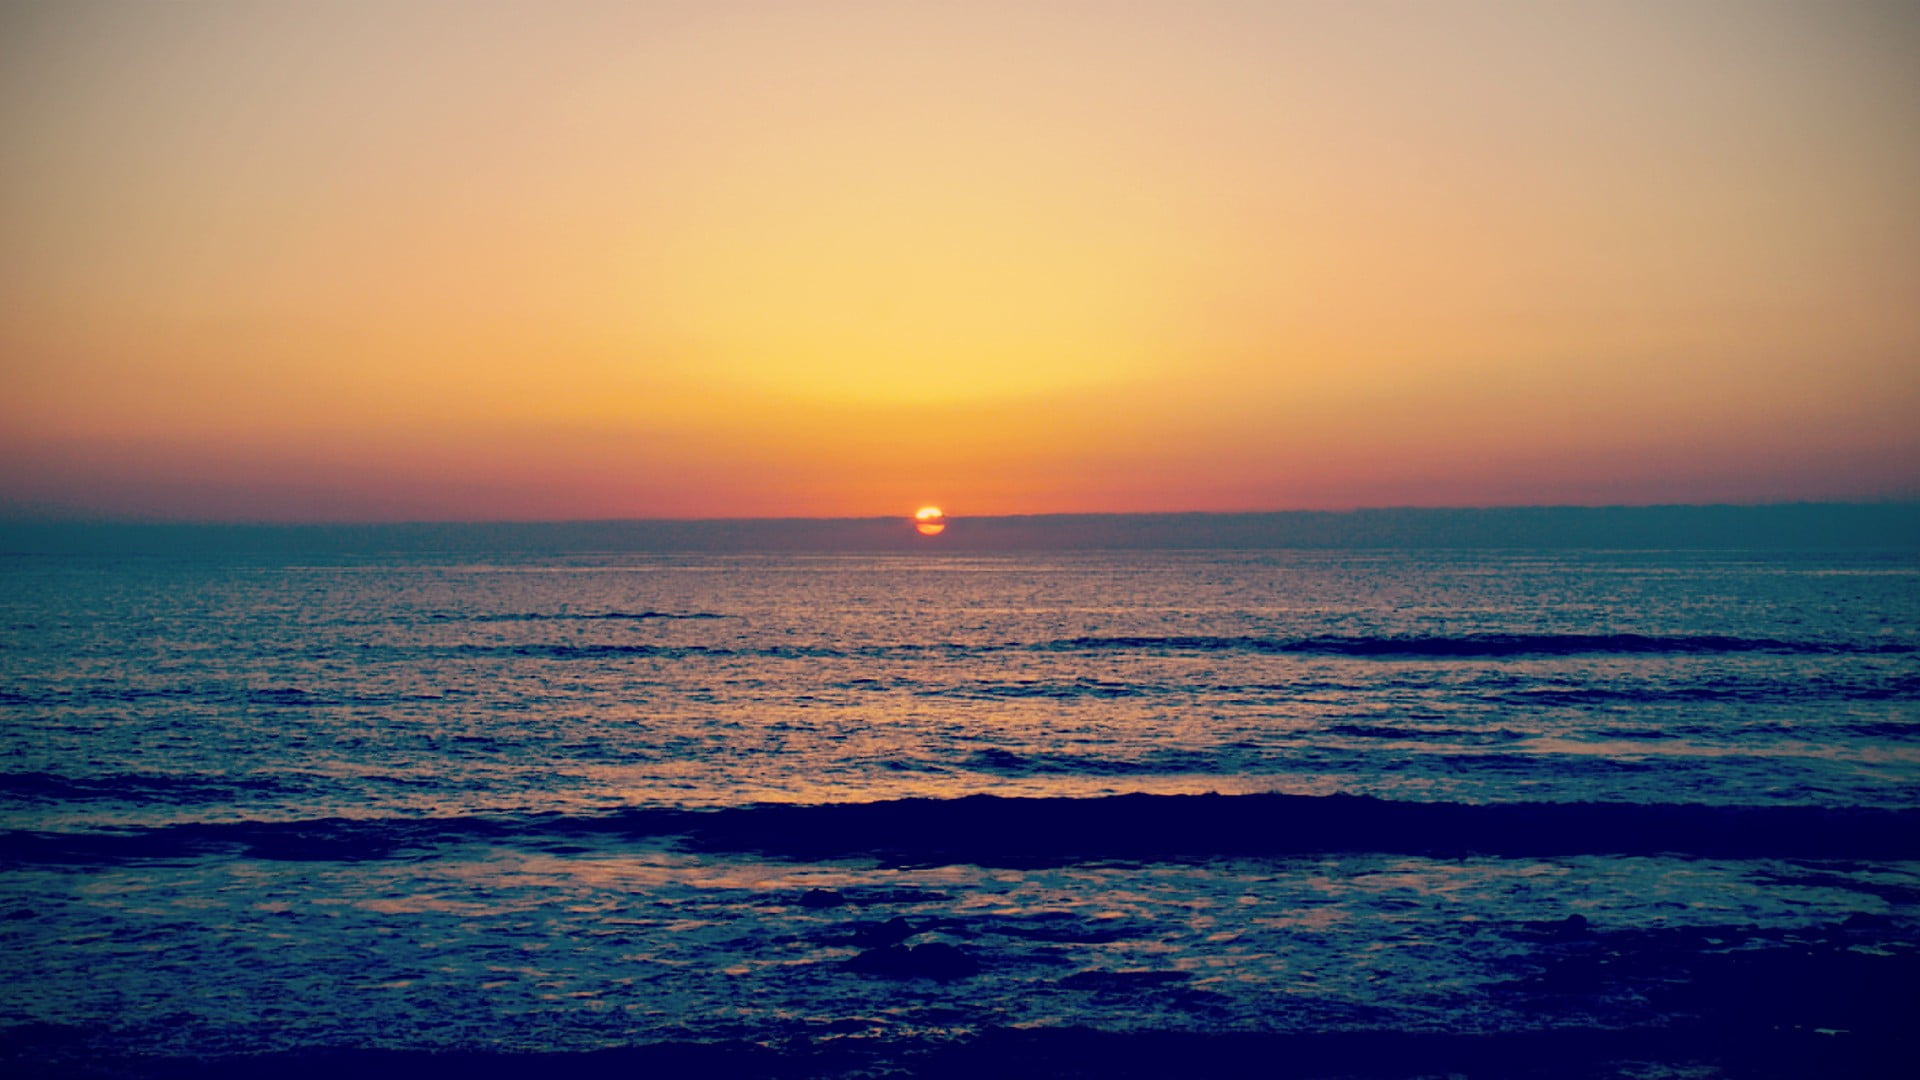 sea and sunset, sunlight, landscape, sky, sea